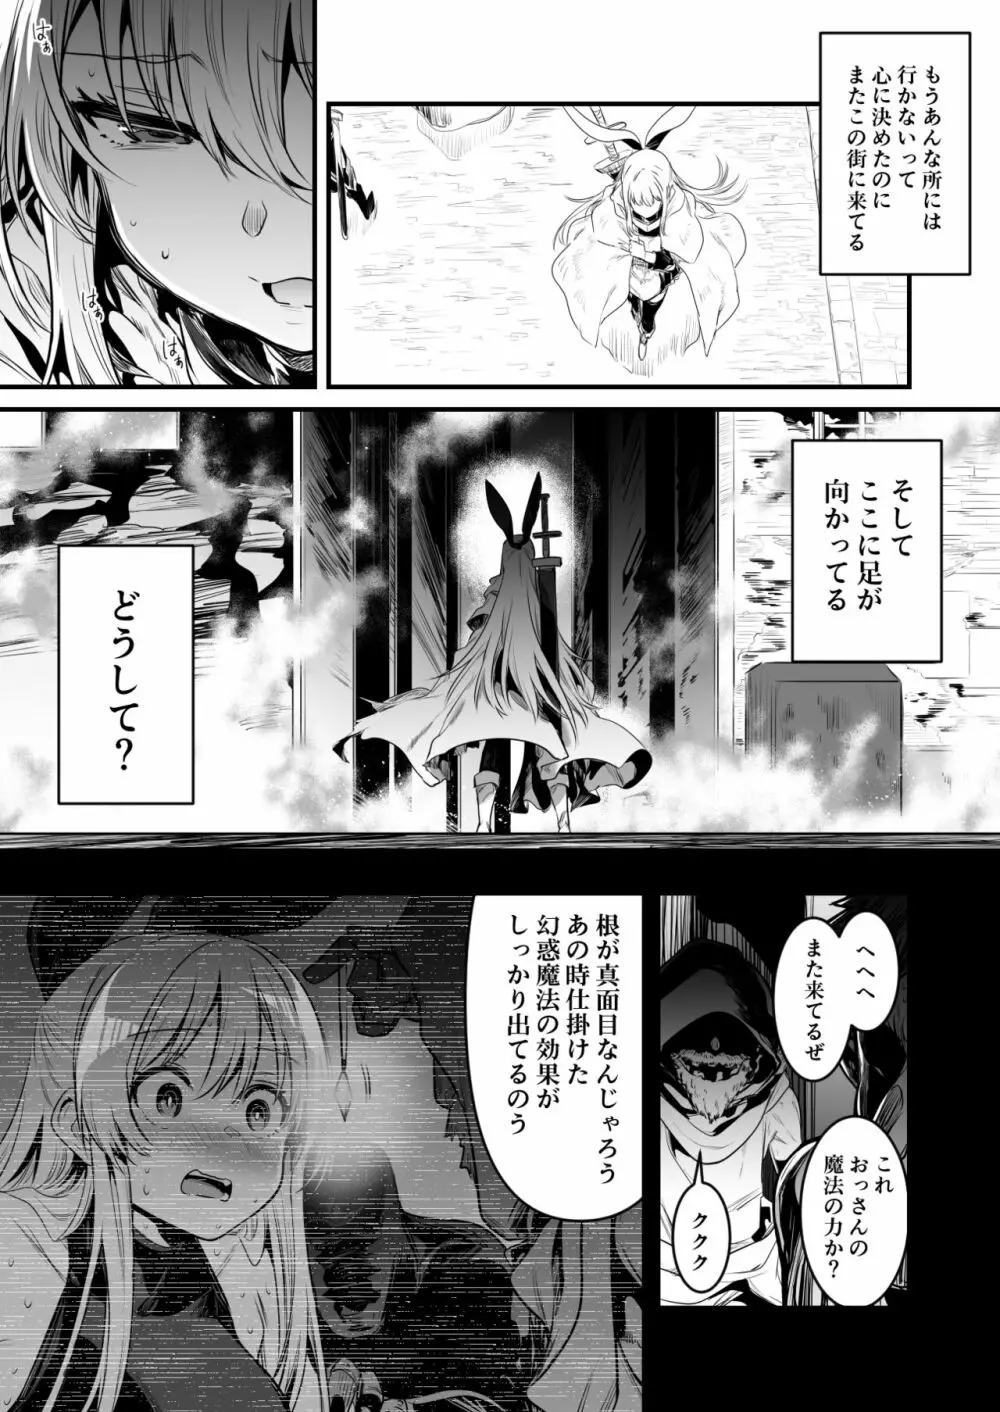 冒険者ちゃん fanbox 2021.7~2022.10 68ページ